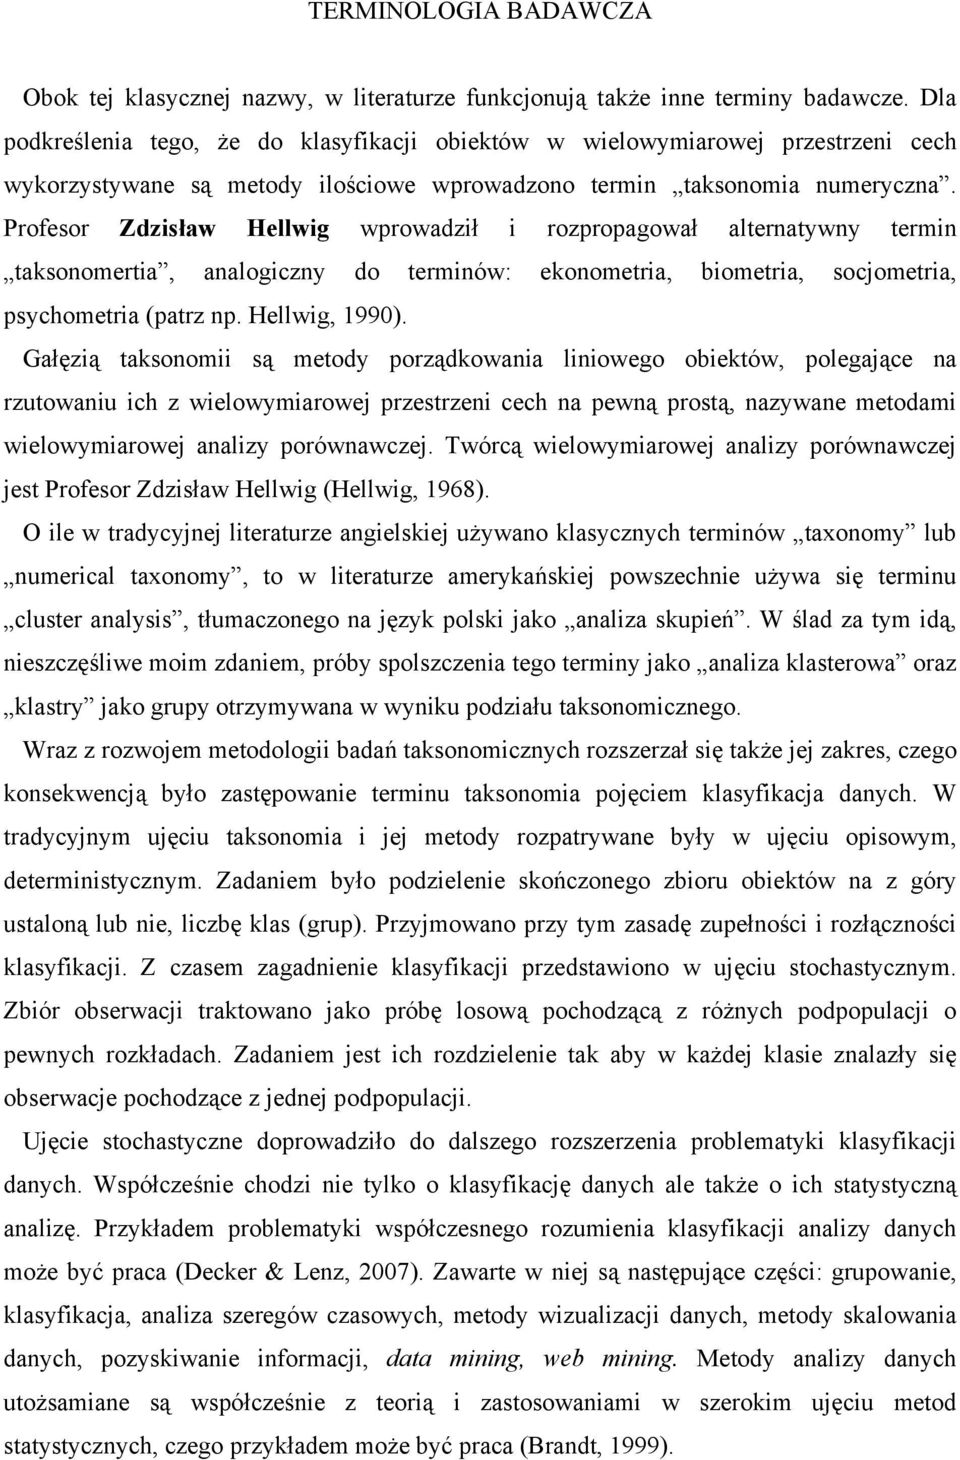 Profesor Zdzisław Hellwig wprowadził i rozpropagował alternatywny termin taksonomertia, analogiczny do terminów: ekonometria, biometria, socjometria, psychometria (patrz np. Hellwig, 1990).